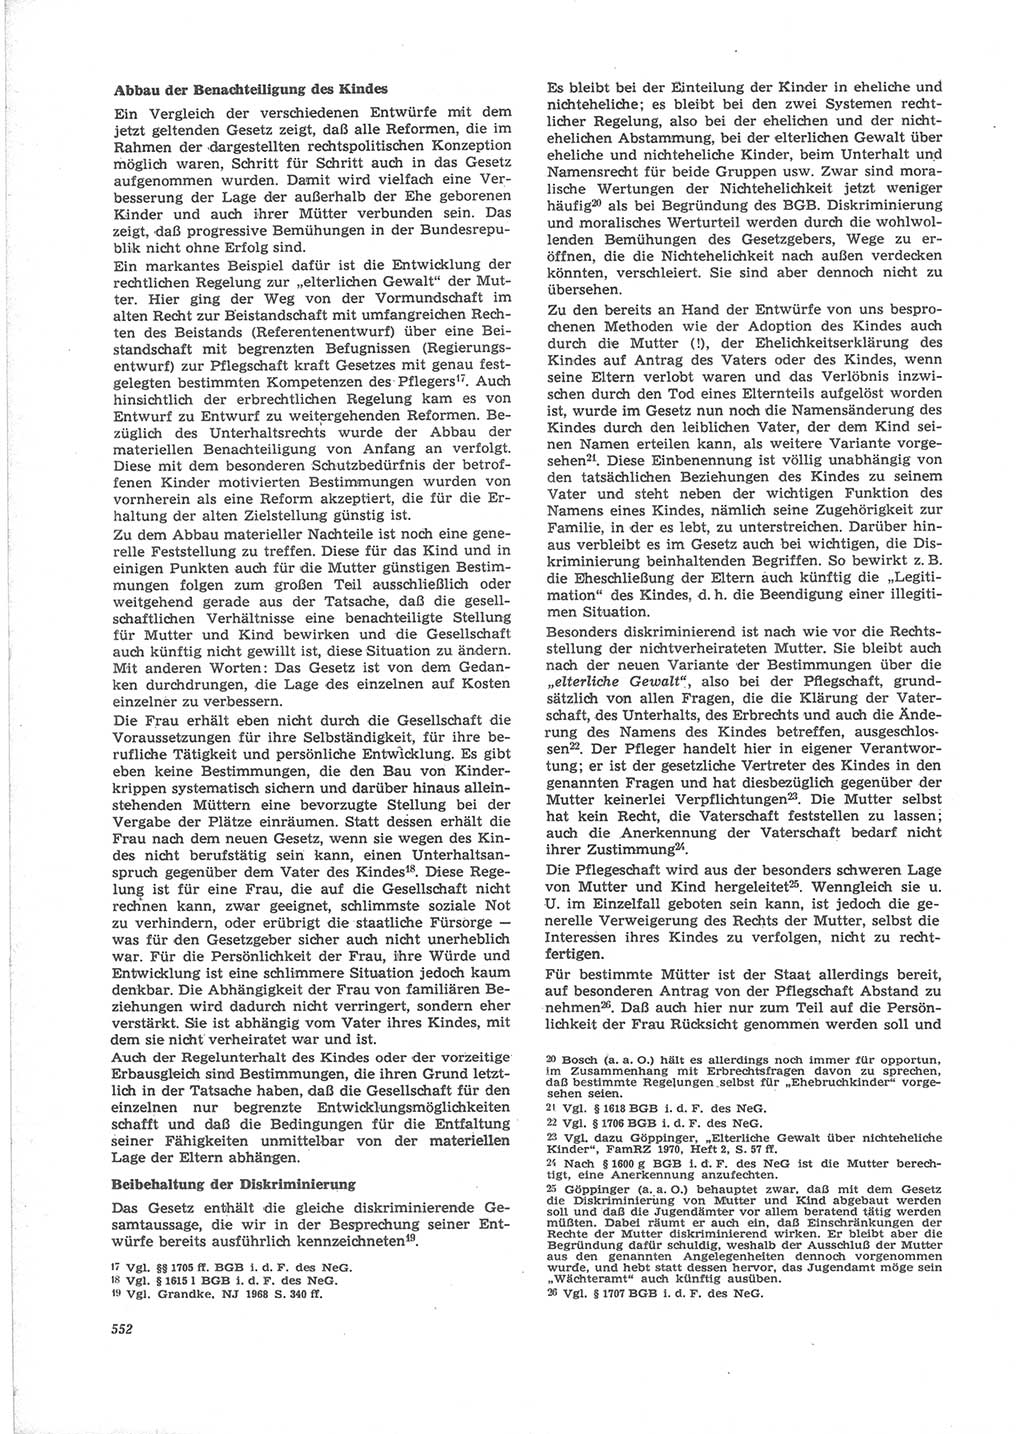 Neue Justiz (NJ), Zeitschrift für Recht und Rechtswissenschaft [Deutsche Demokratische Republik (DDR)], 24. Jahrgang 1970, Seite 552 (NJ DDR 1970, S. 552)